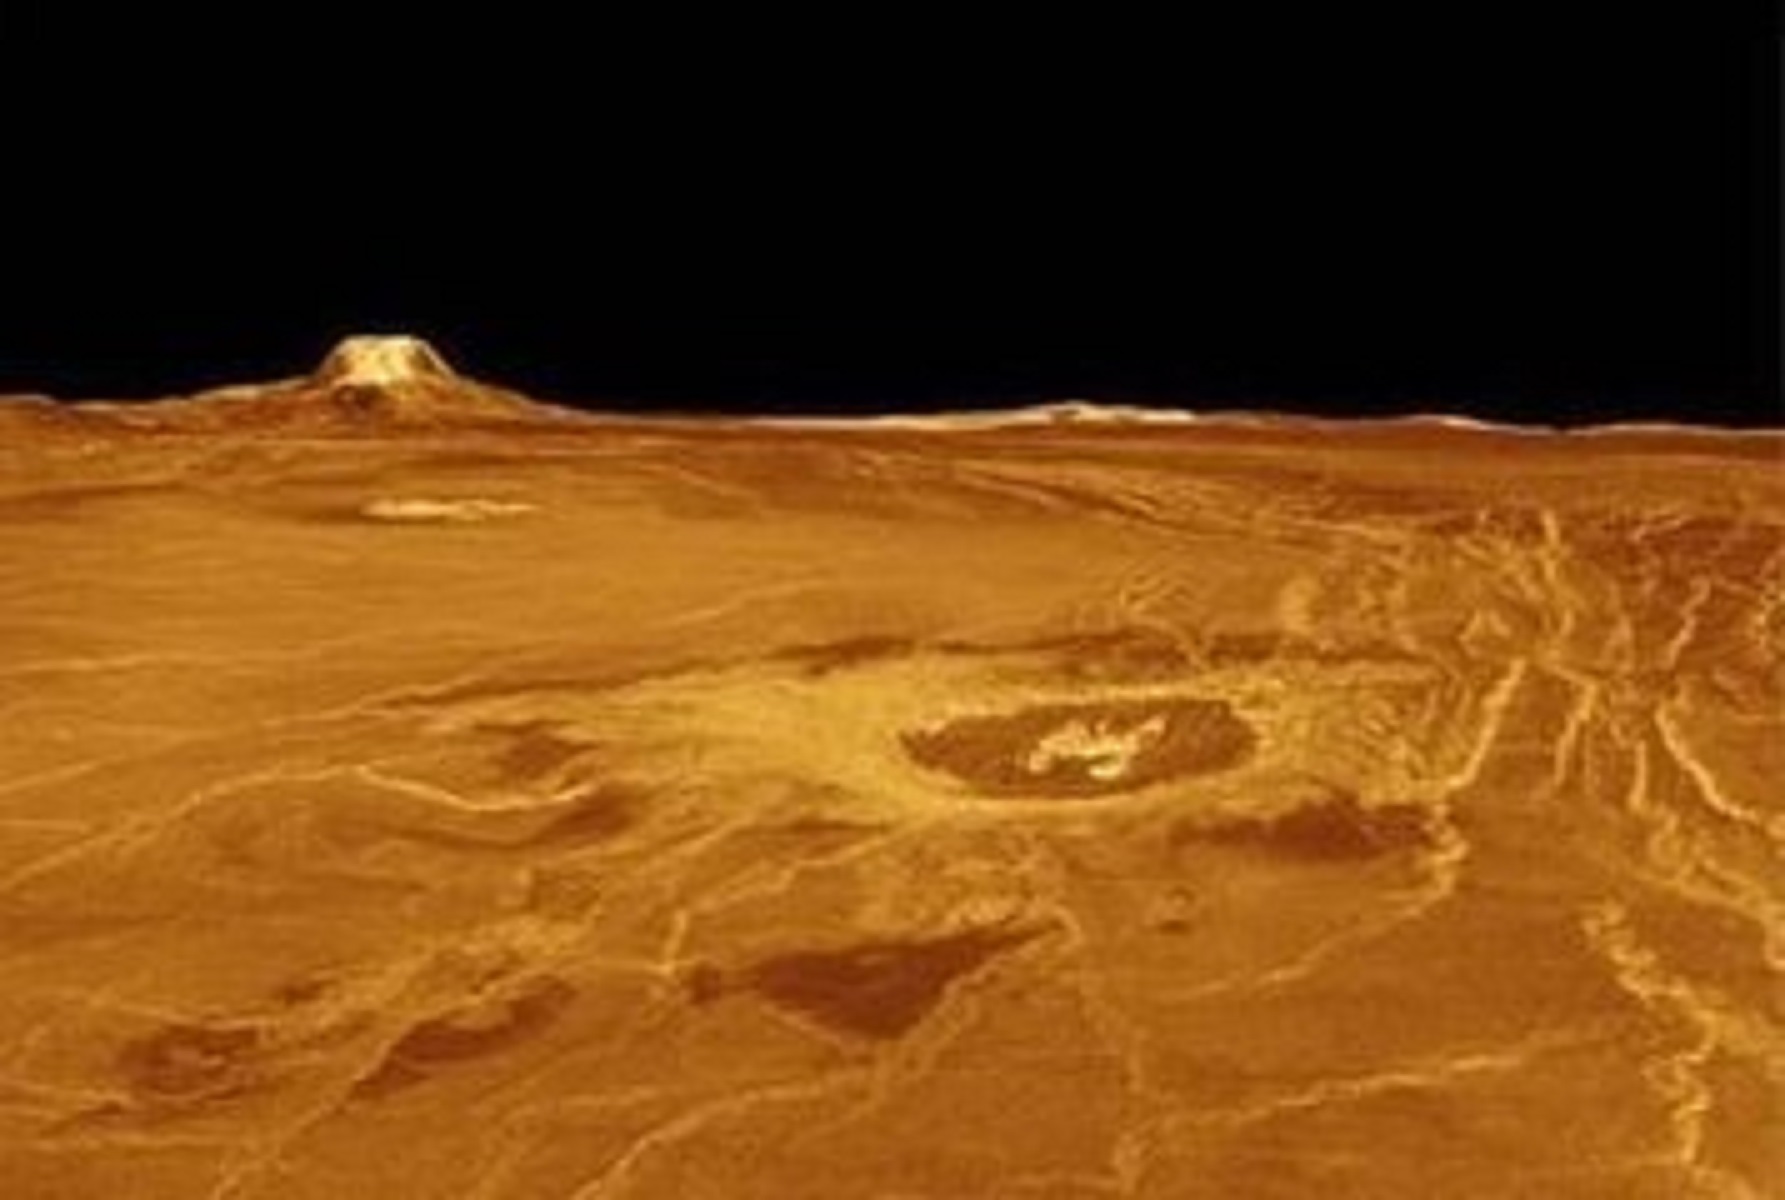 金星的大气压强十分大,为地球的92倍,相当于地球陆地中1千米深度时的